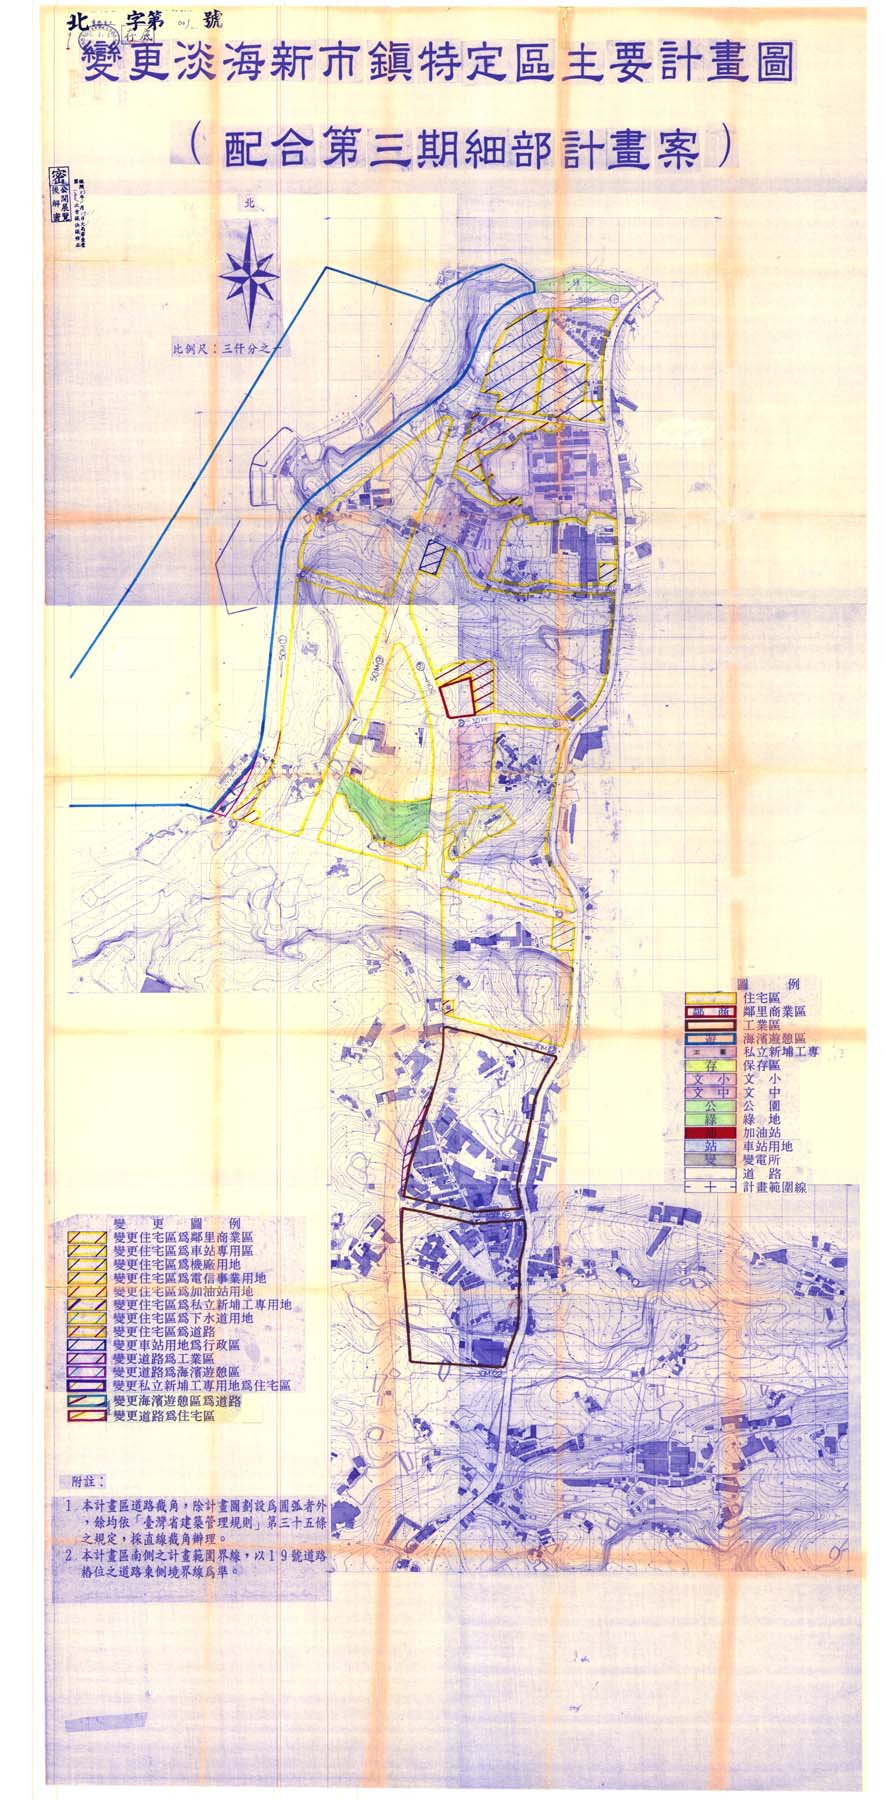 變更淡海新市鎮特定區主要計畫圖(配合第三期細部計畫案)